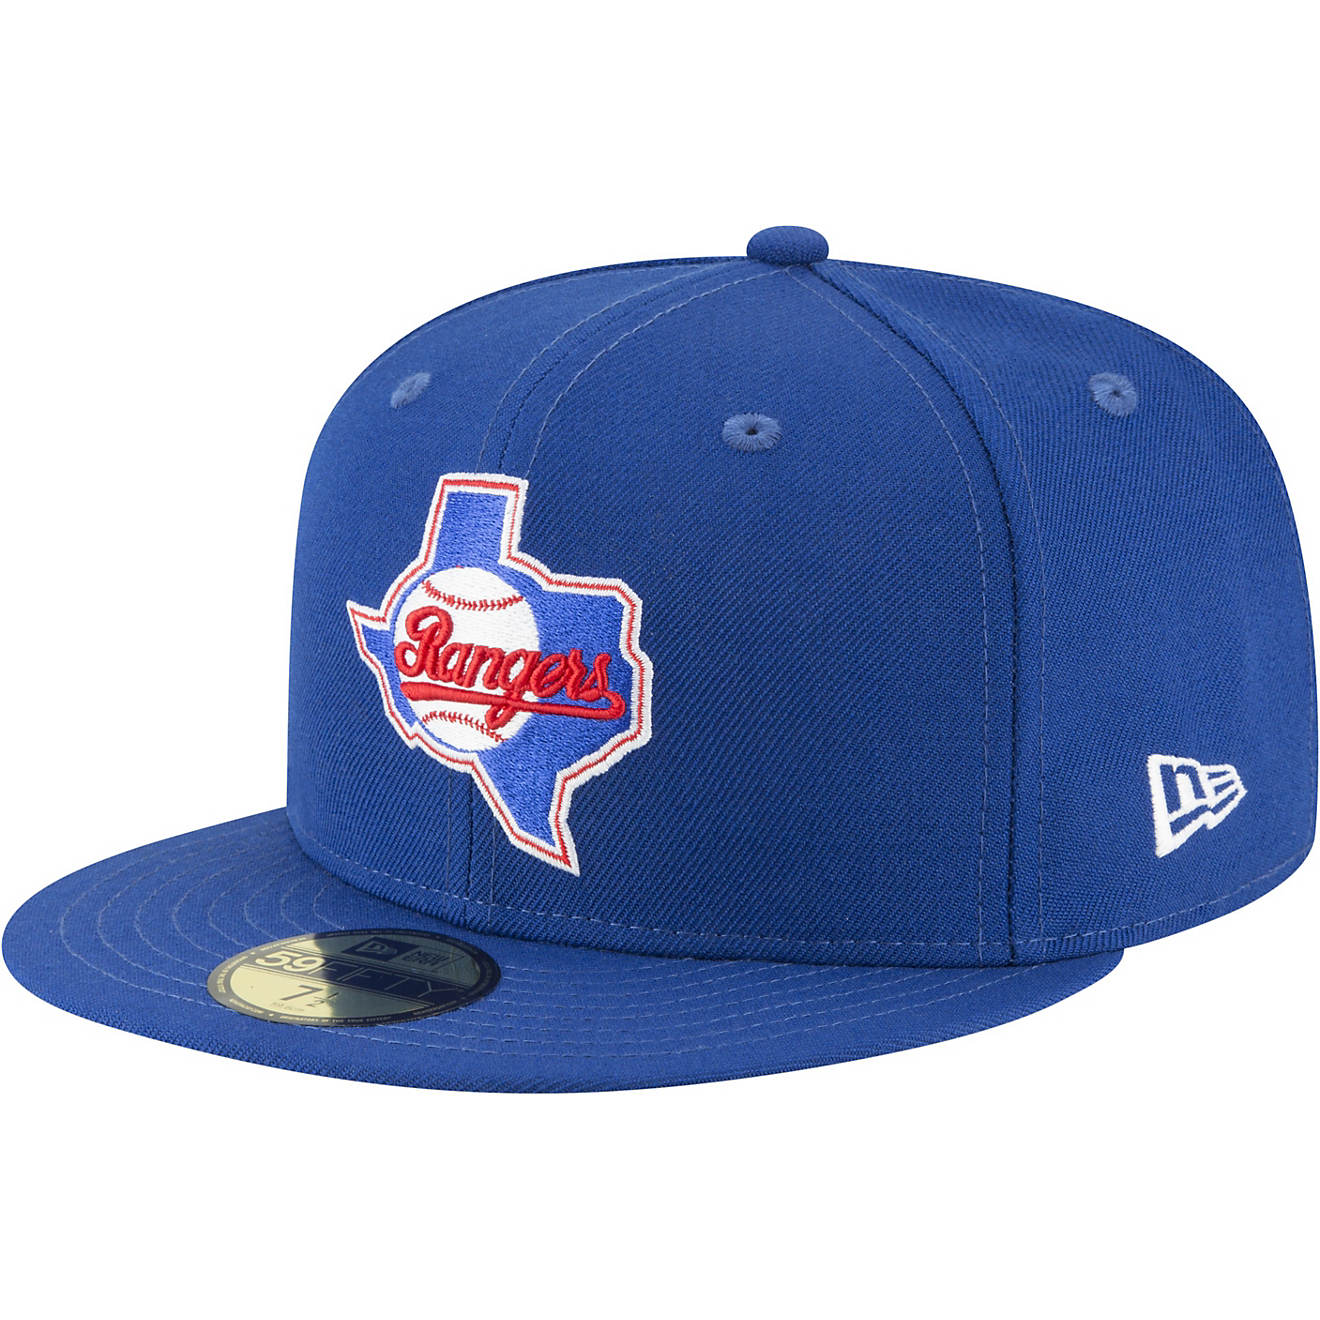 New Era Men's Texas Rangers 59FIFTY Cooperstown Cap                                                                              - view number 1